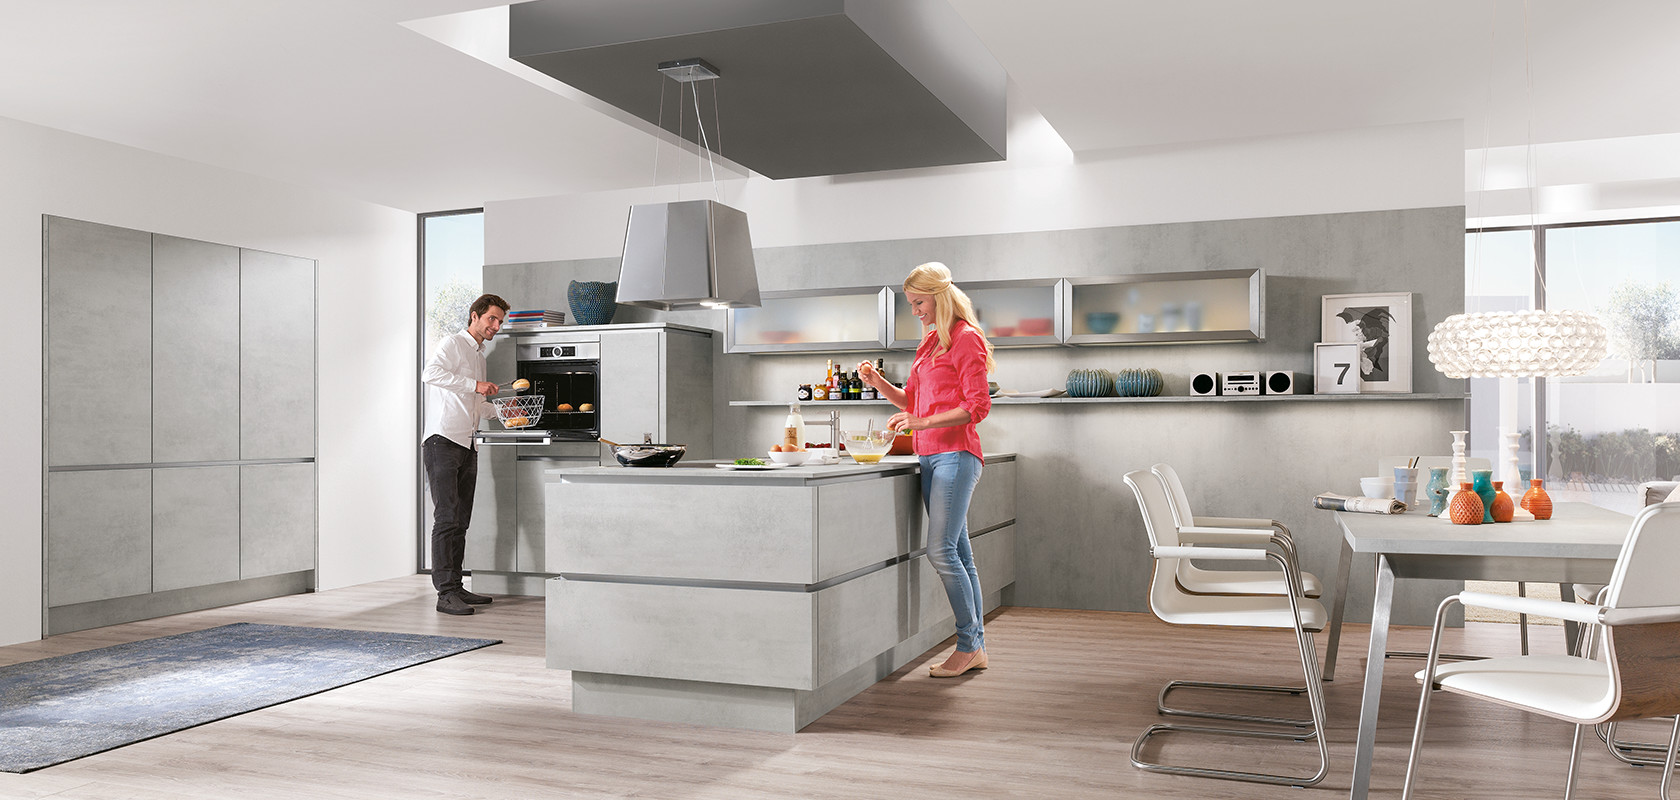 Een modern keukenontwerp met twee mensen die koken, met strakke kasten, roestvrijstalen apparaten en een lichte, ruime indeling.